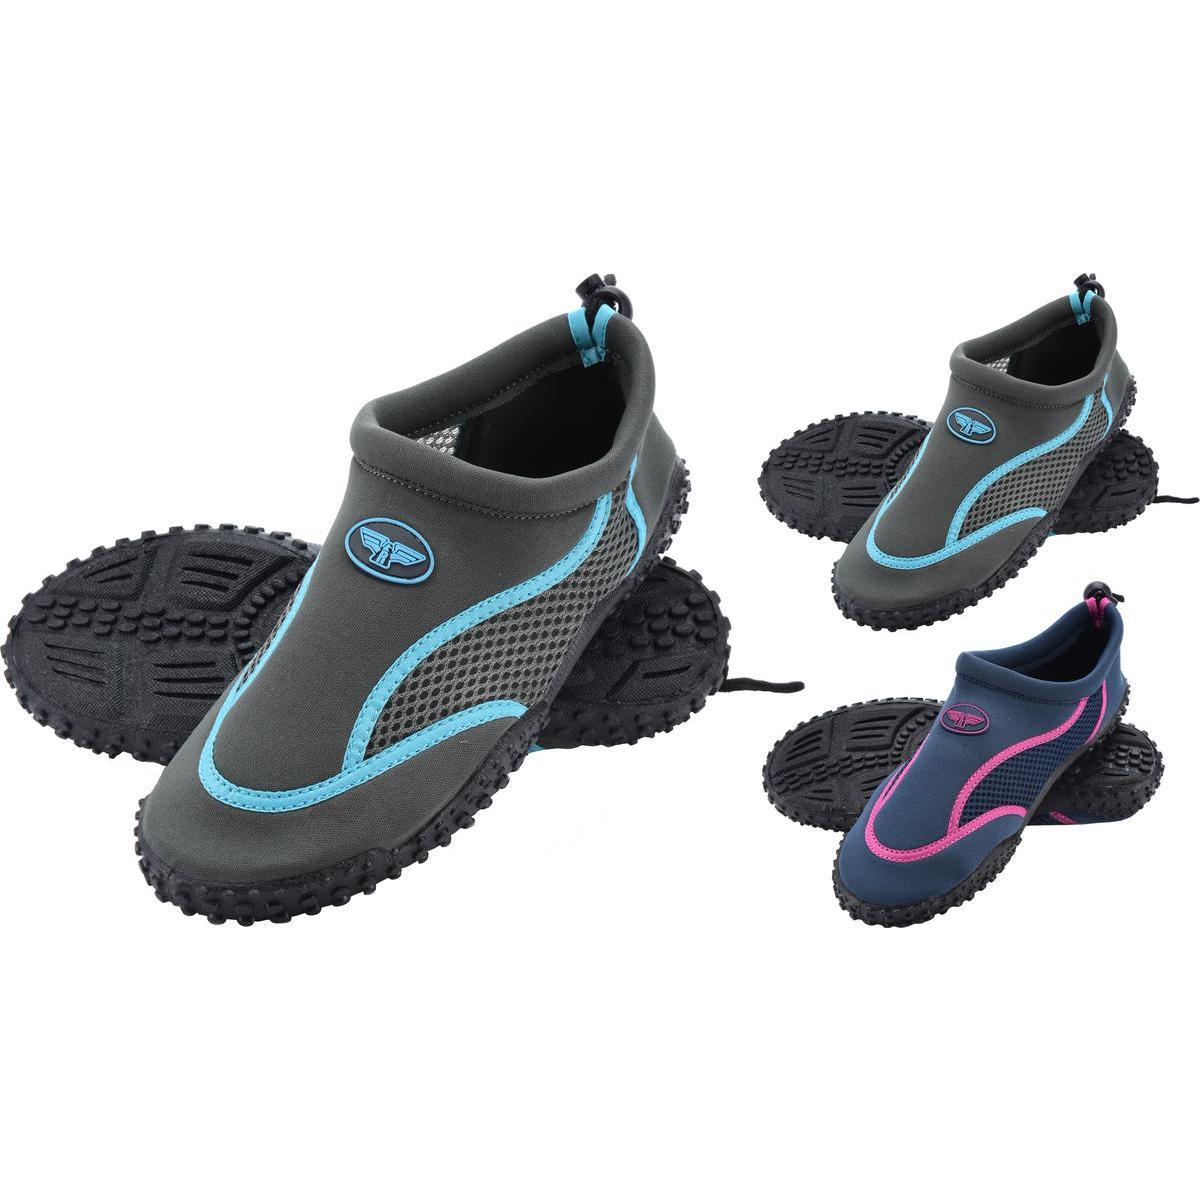 Chaussures d`eau femme - Différents modèles - Pointures 36 à 41 - Multicolore